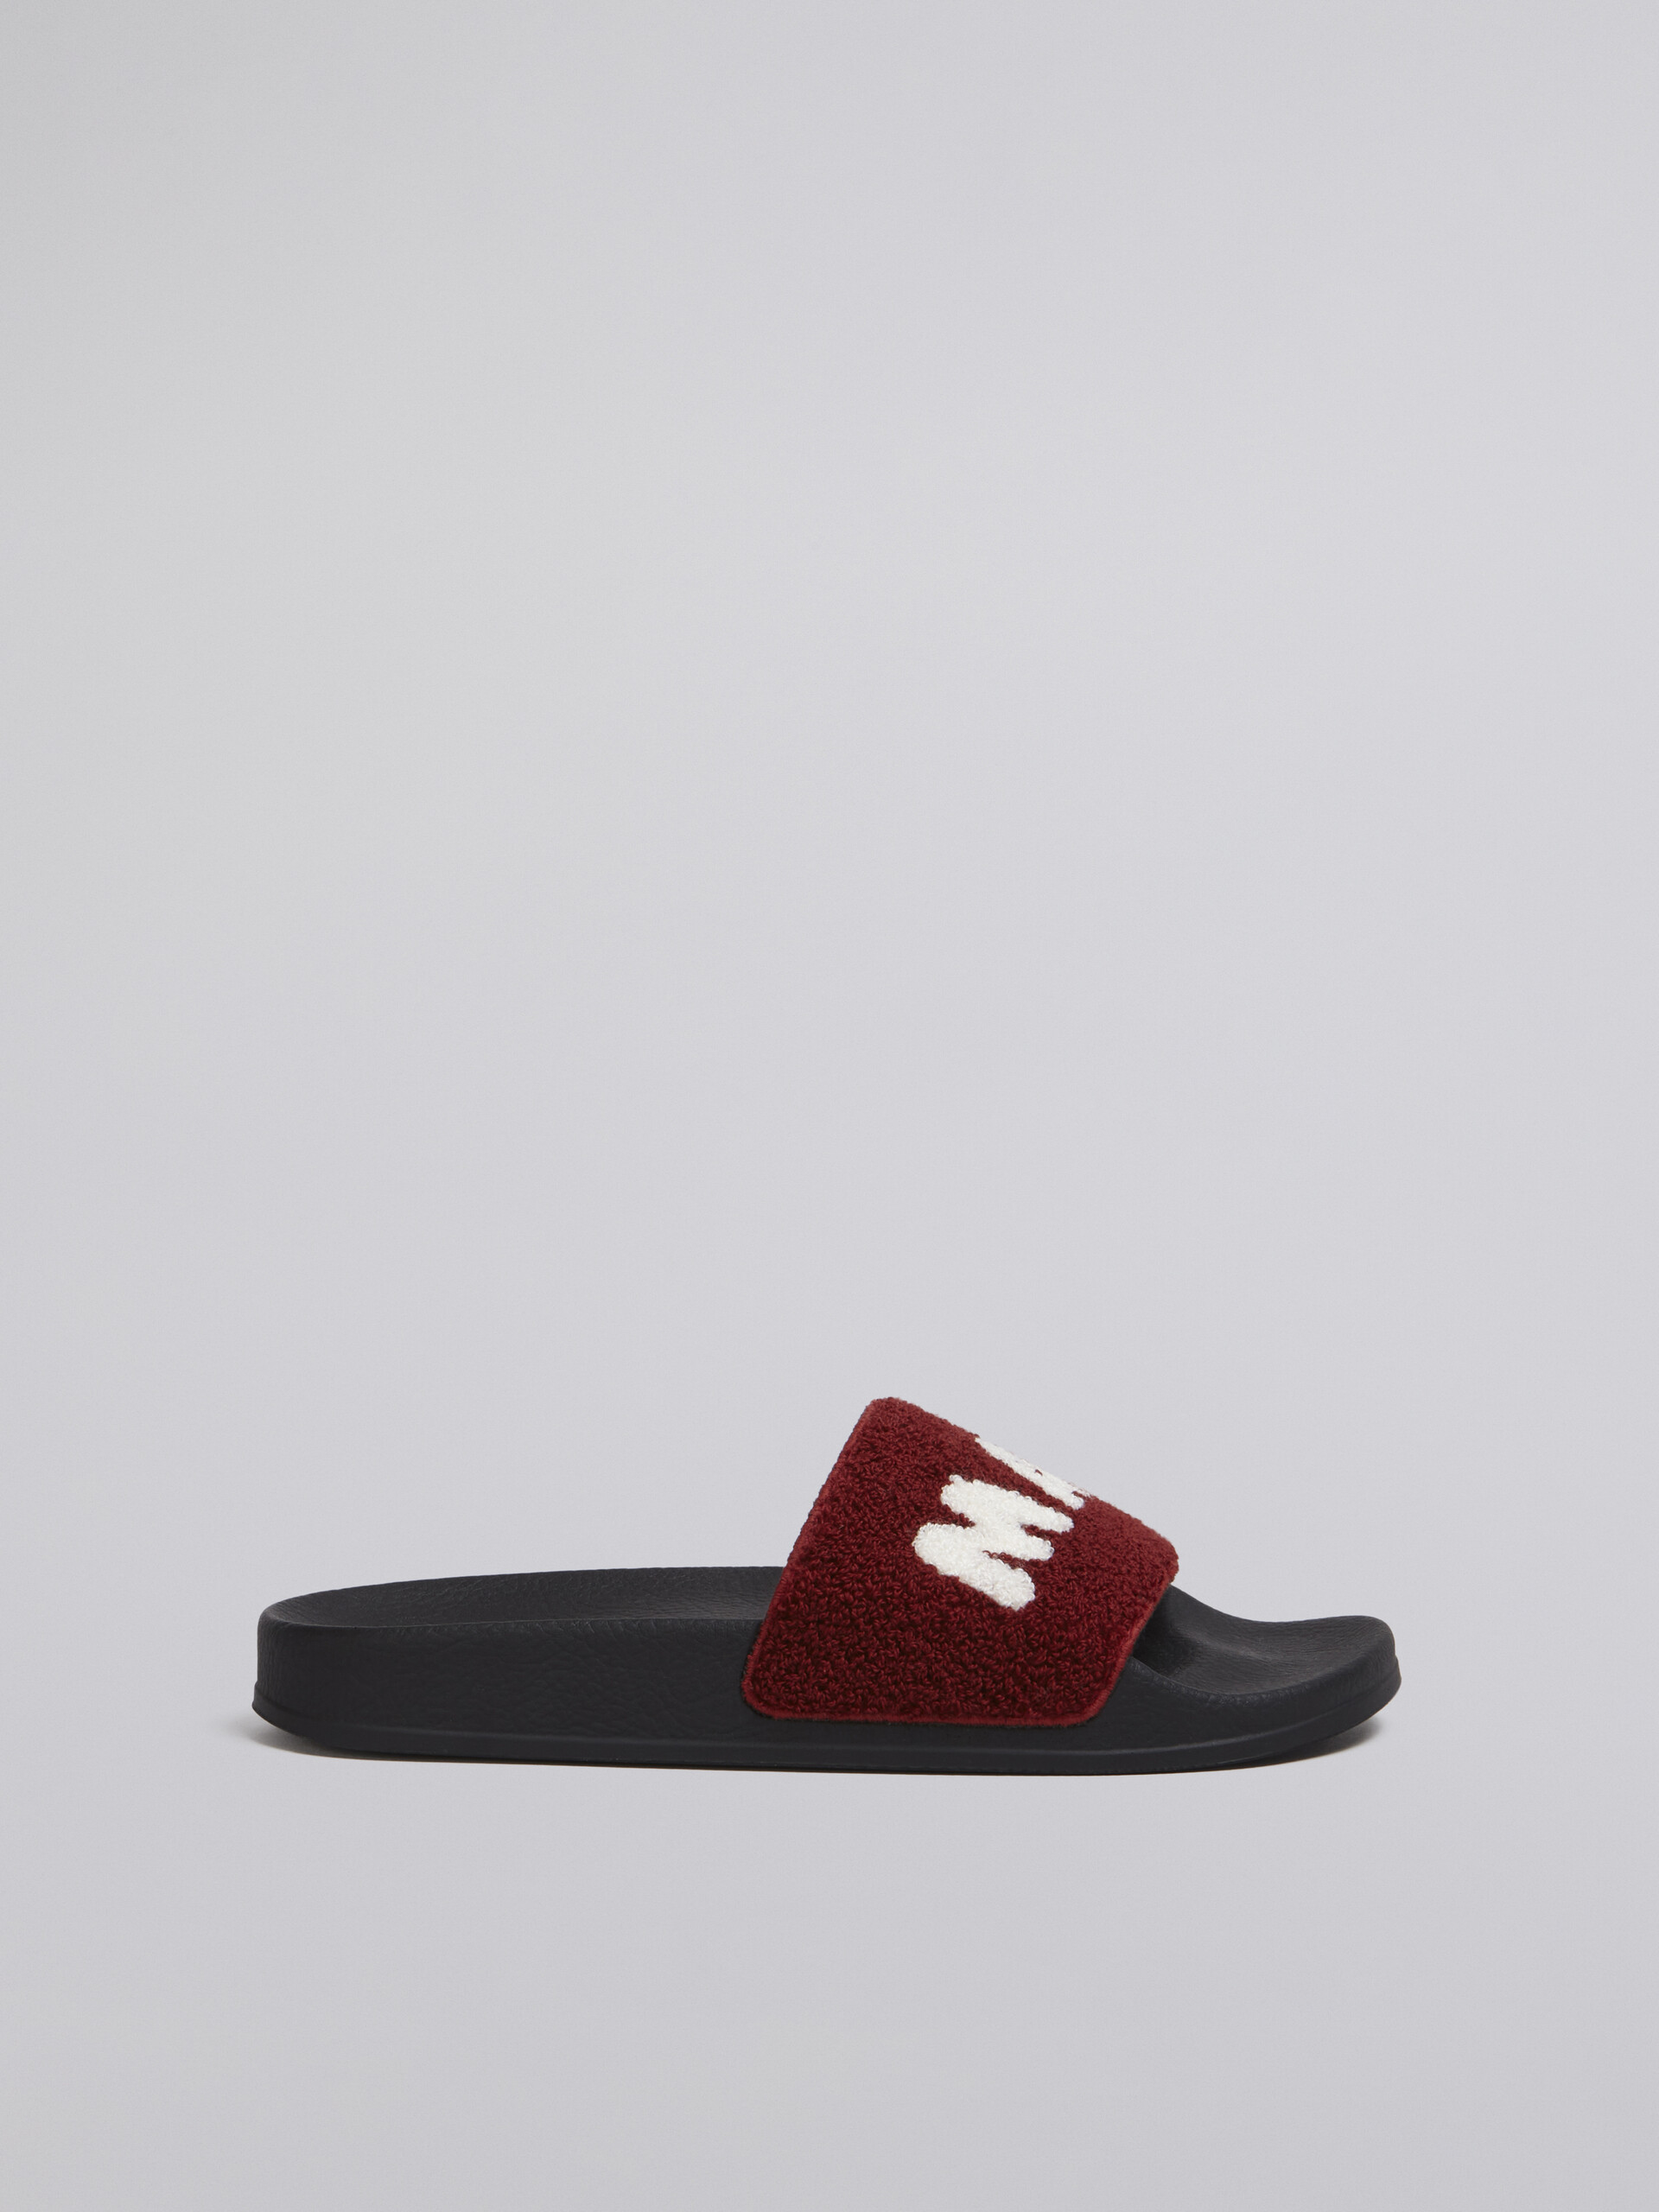 Sandalo in gomma con fascia in spugna bianco e rosso - Sandali - Image 1